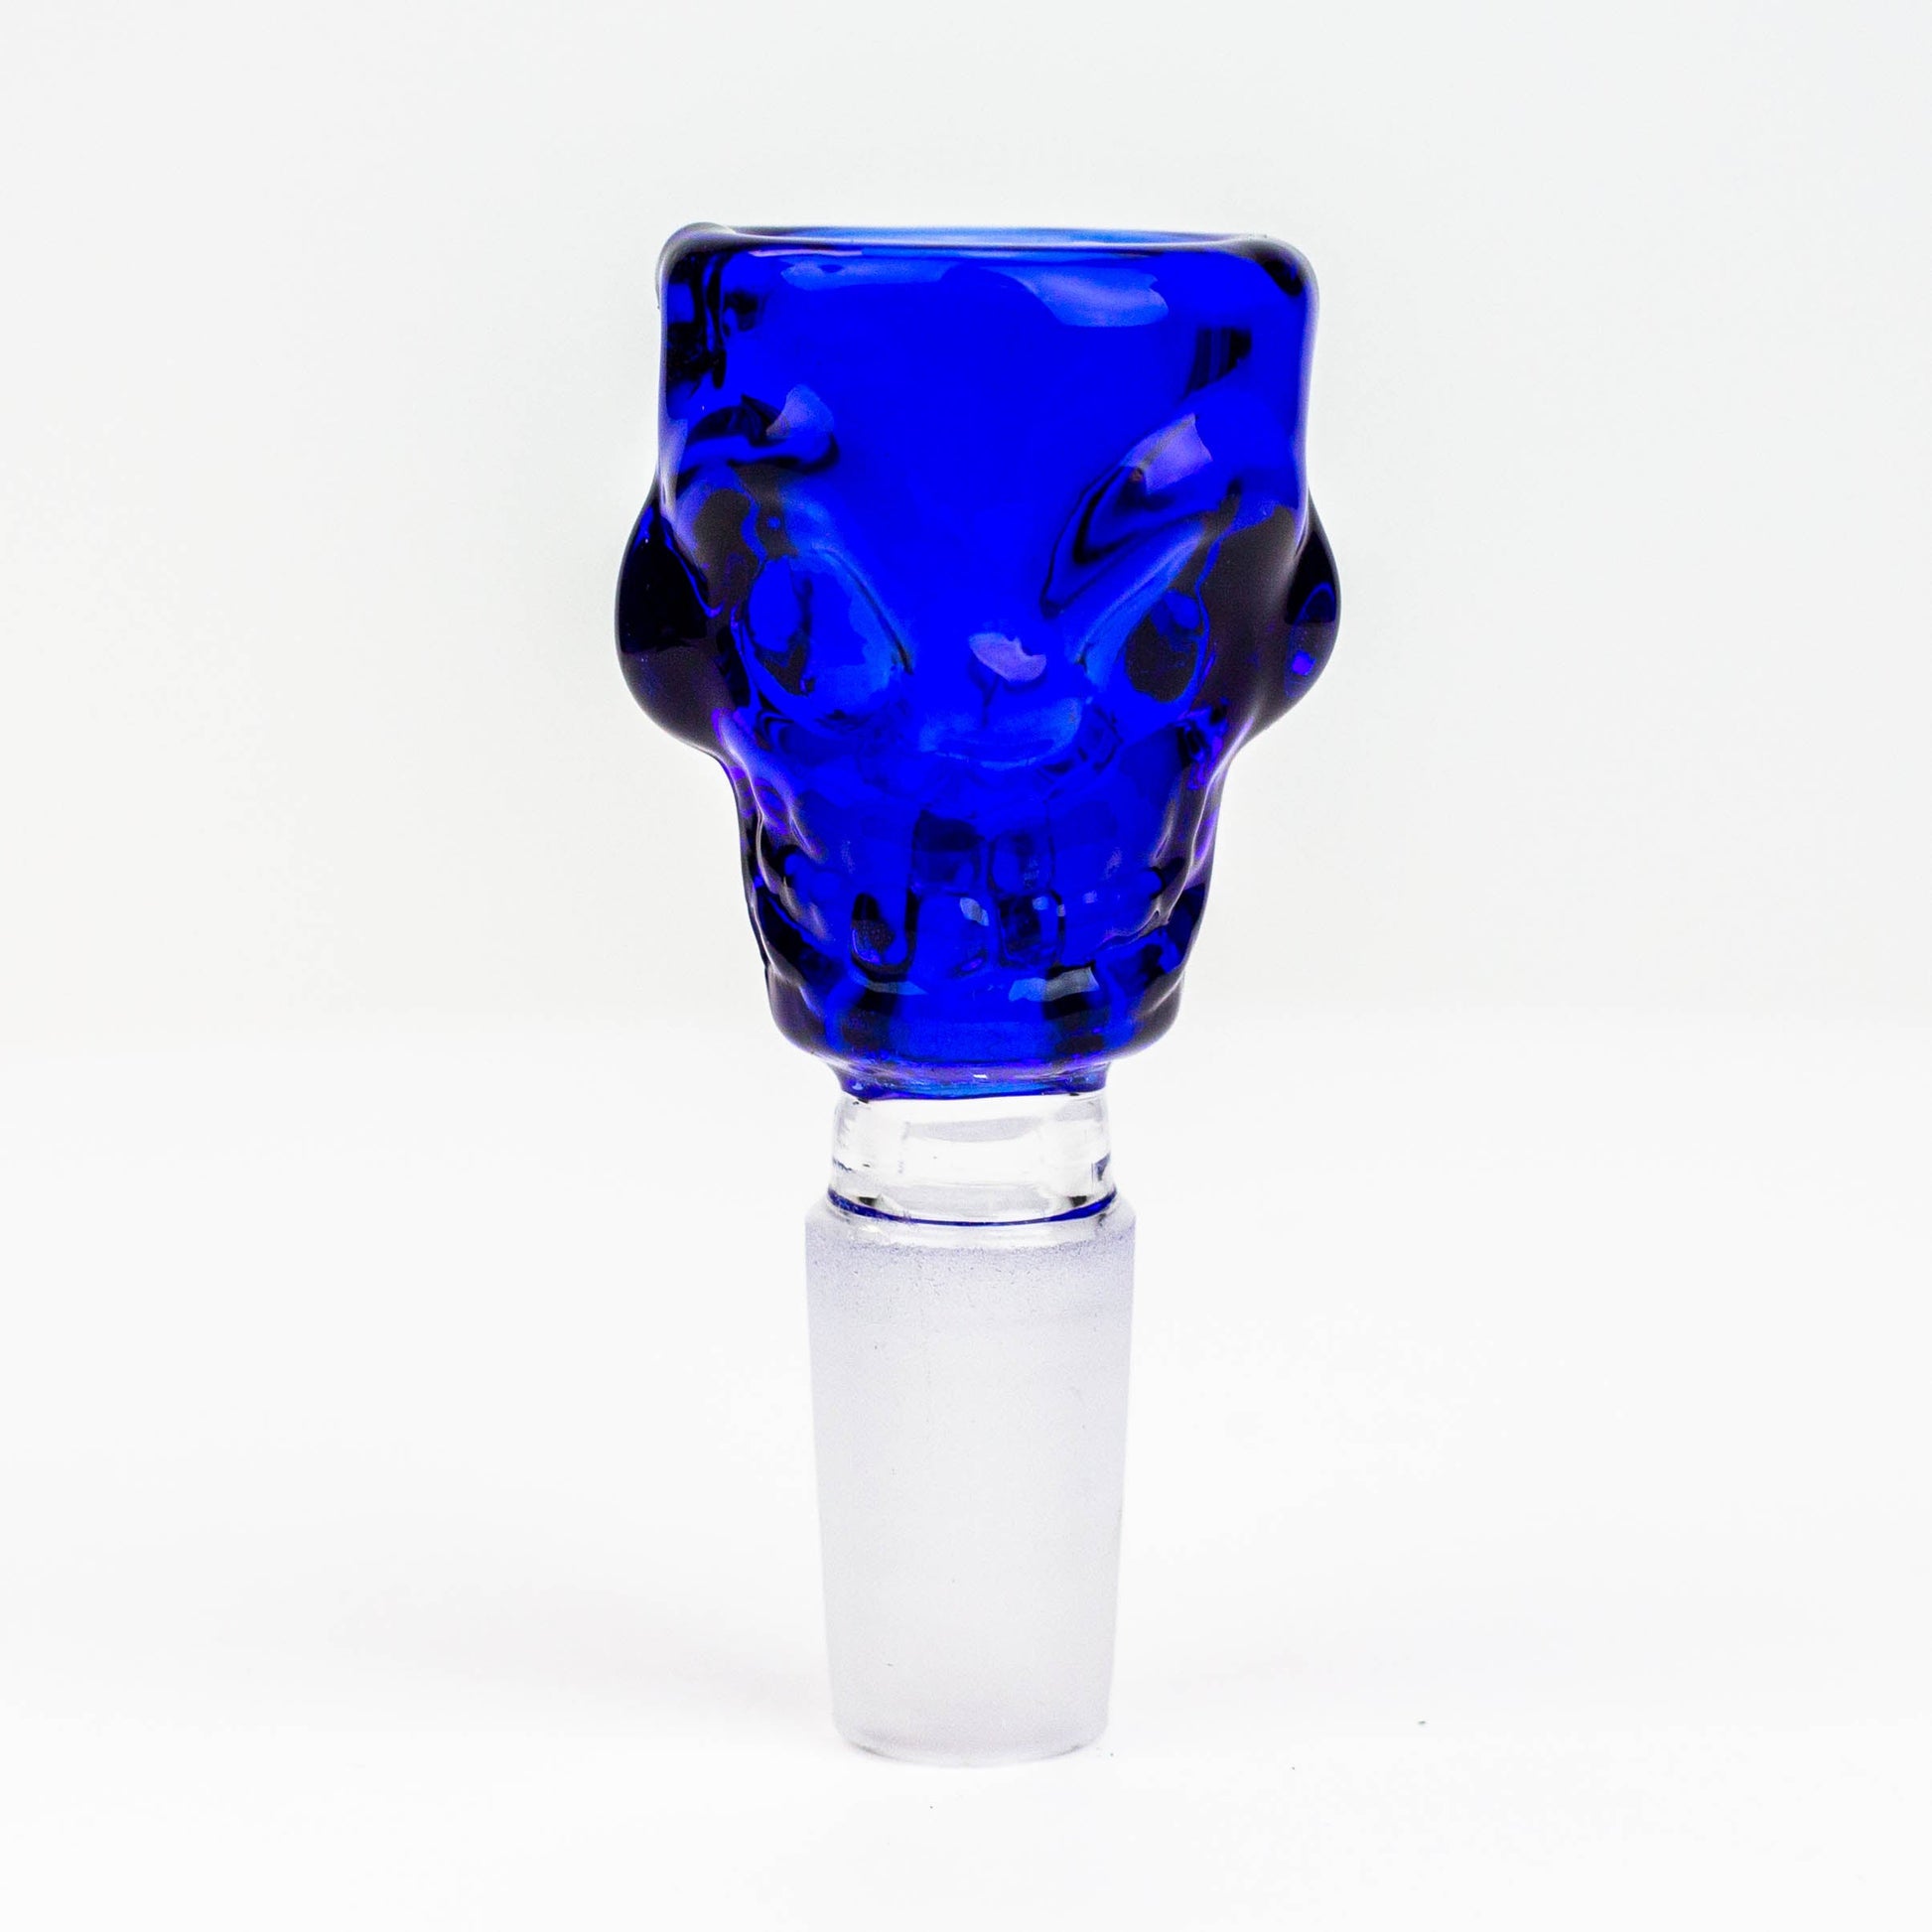 Skull shape glass Small bowl for 14 mm female Joint_2